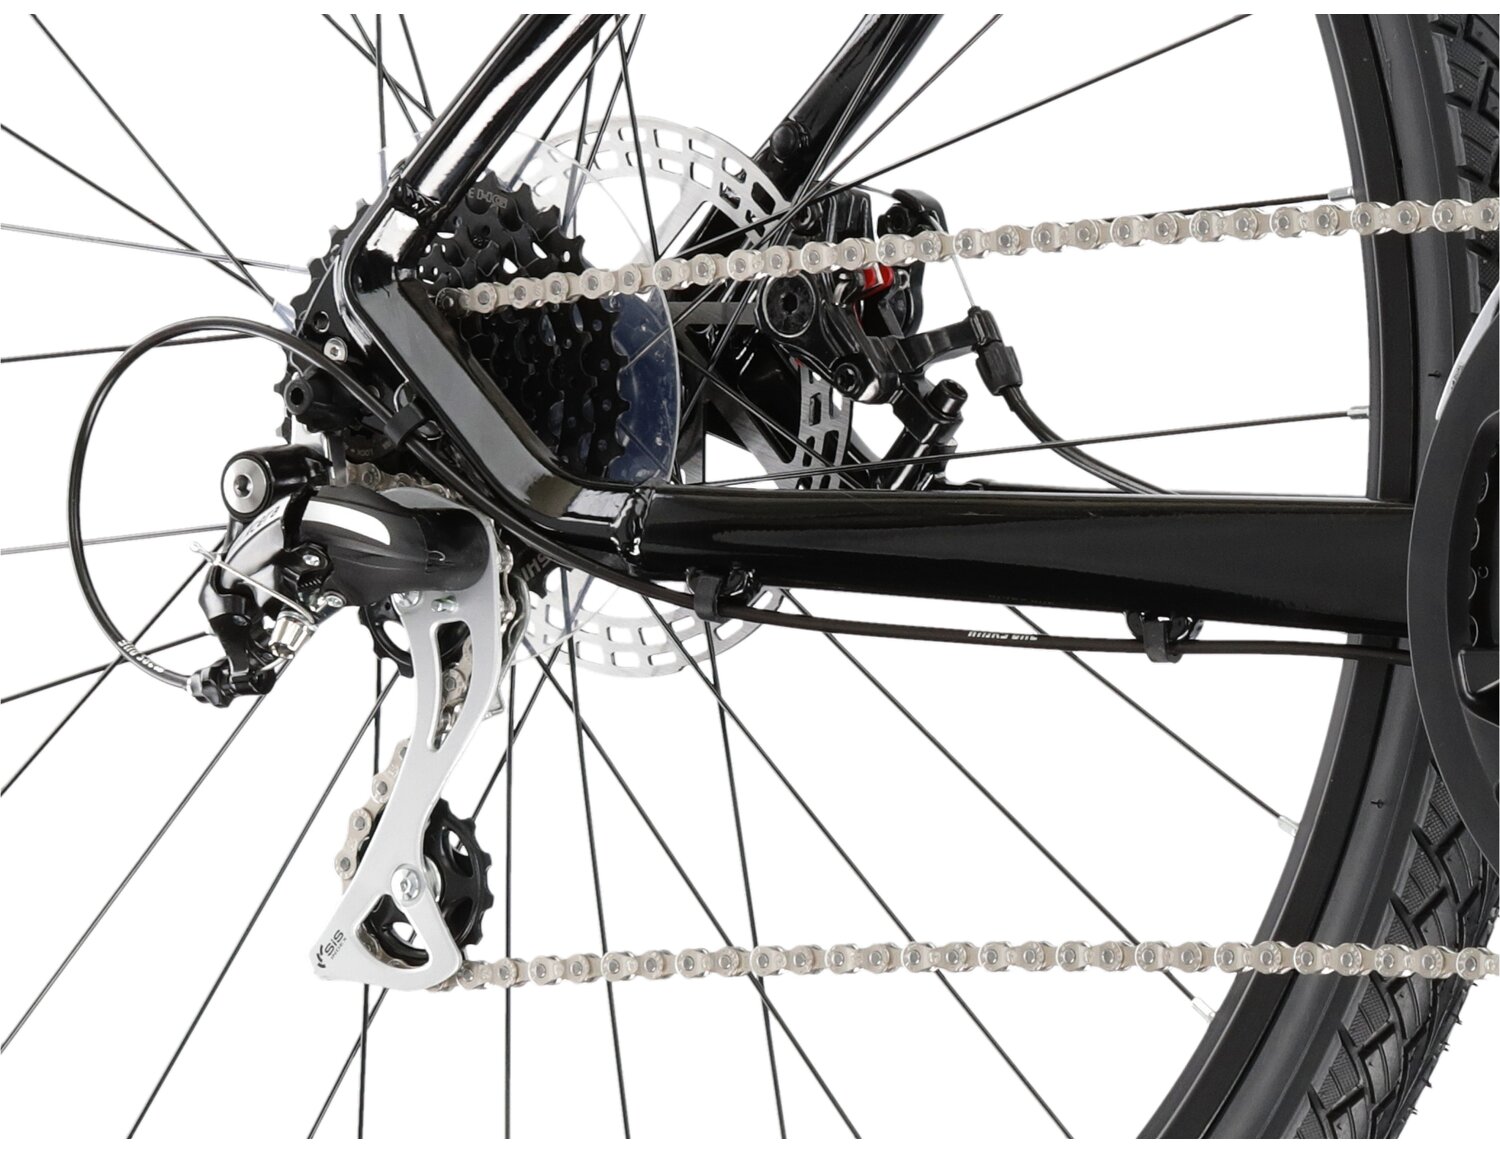  Tylna ośmiobiegowa przerzutka Shimano Acera M3020 oraz mechaniczne hamulce tarczowe w rowerze crossowym KROSS Evado 3.0 